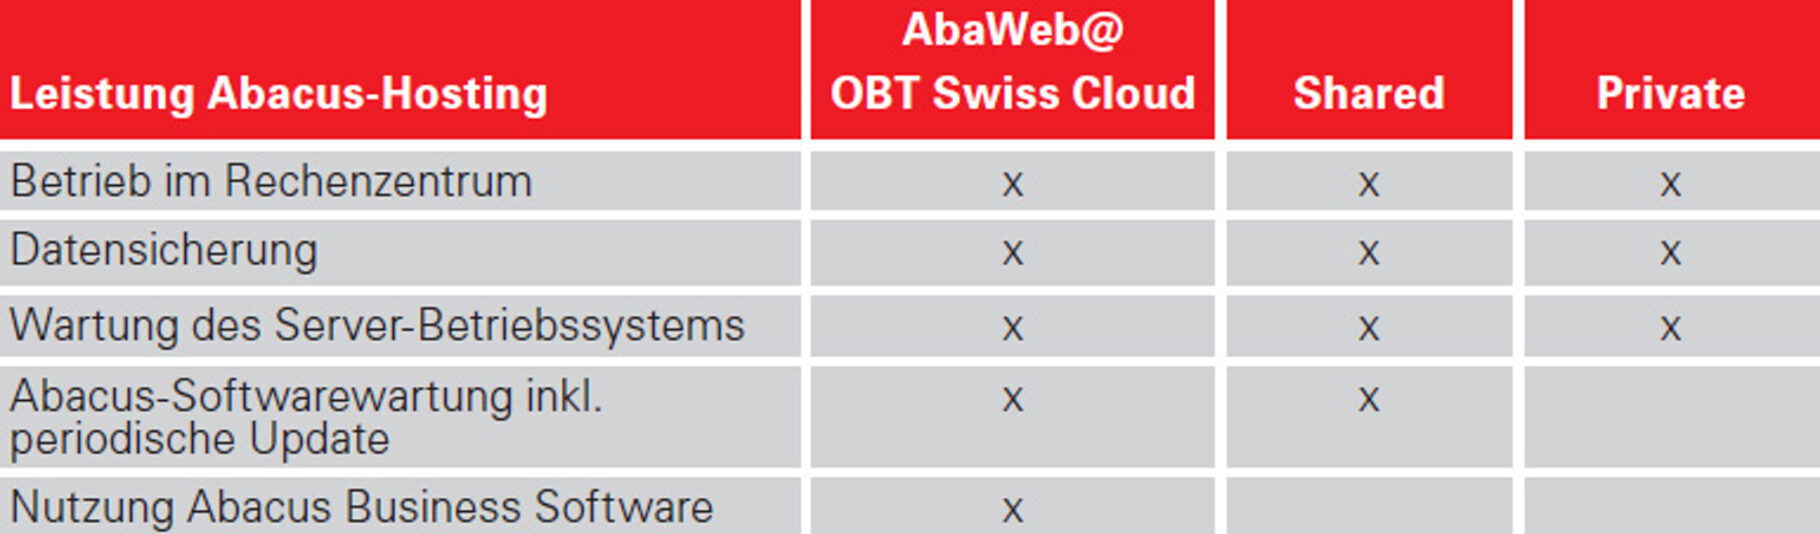 Abacus-Hosting in der OBT Swiss Cloud - unsere Angebote im Überblick